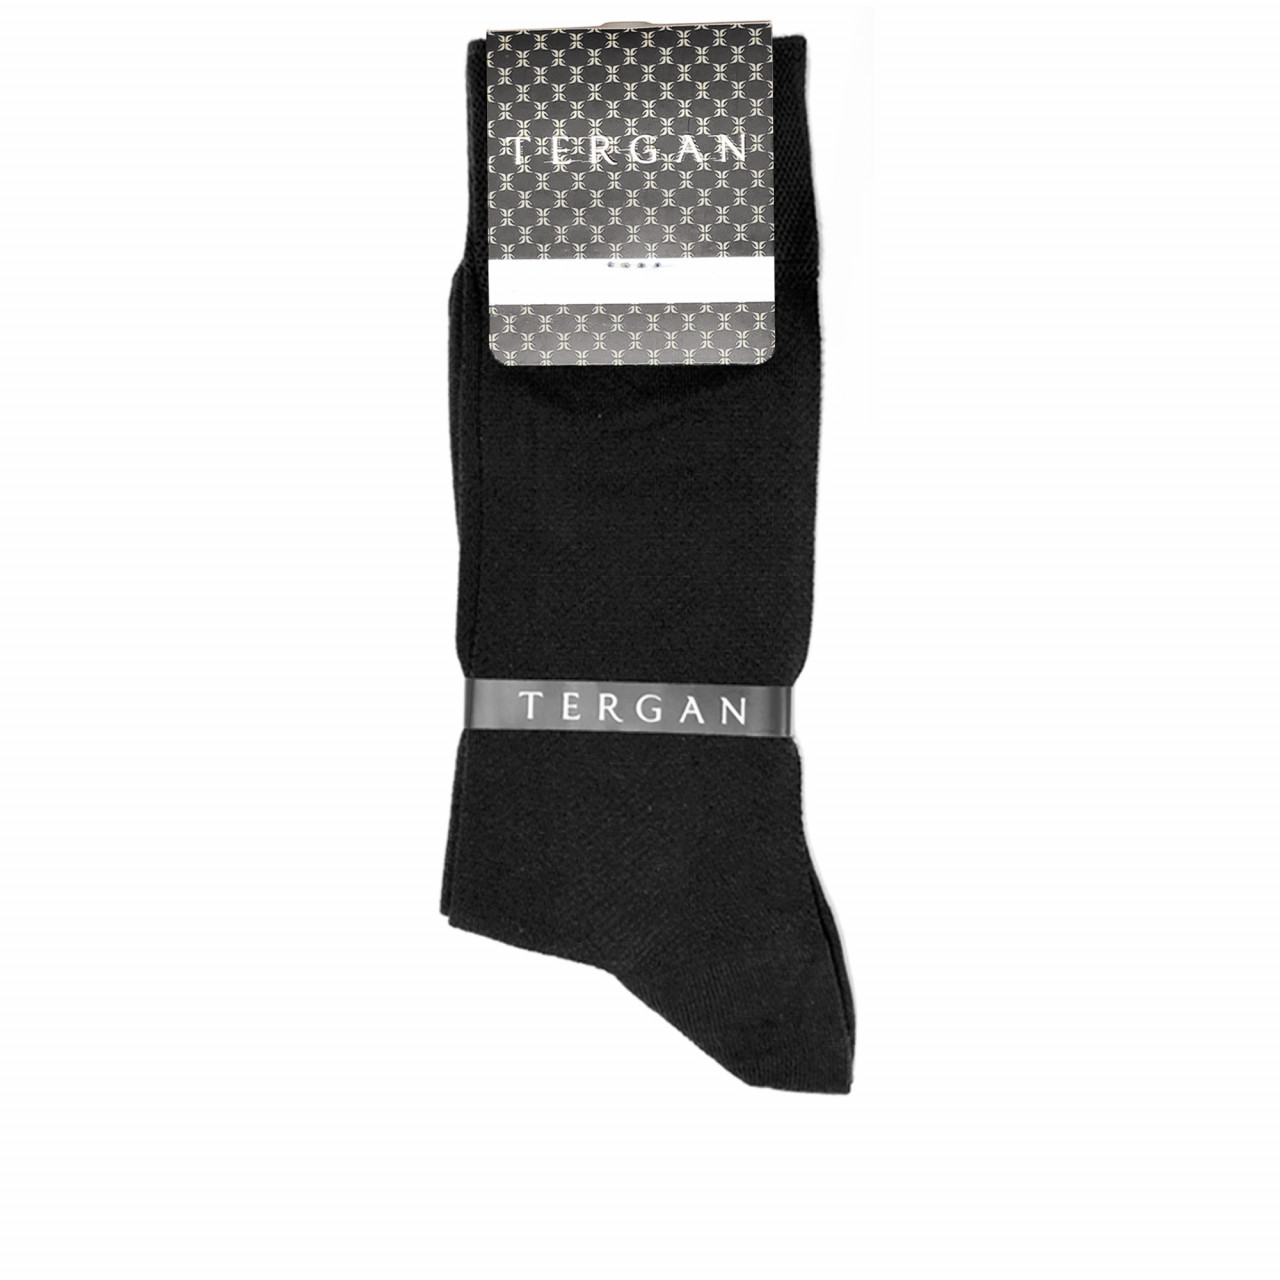 Черни мъжки чорапи от памук и коприна